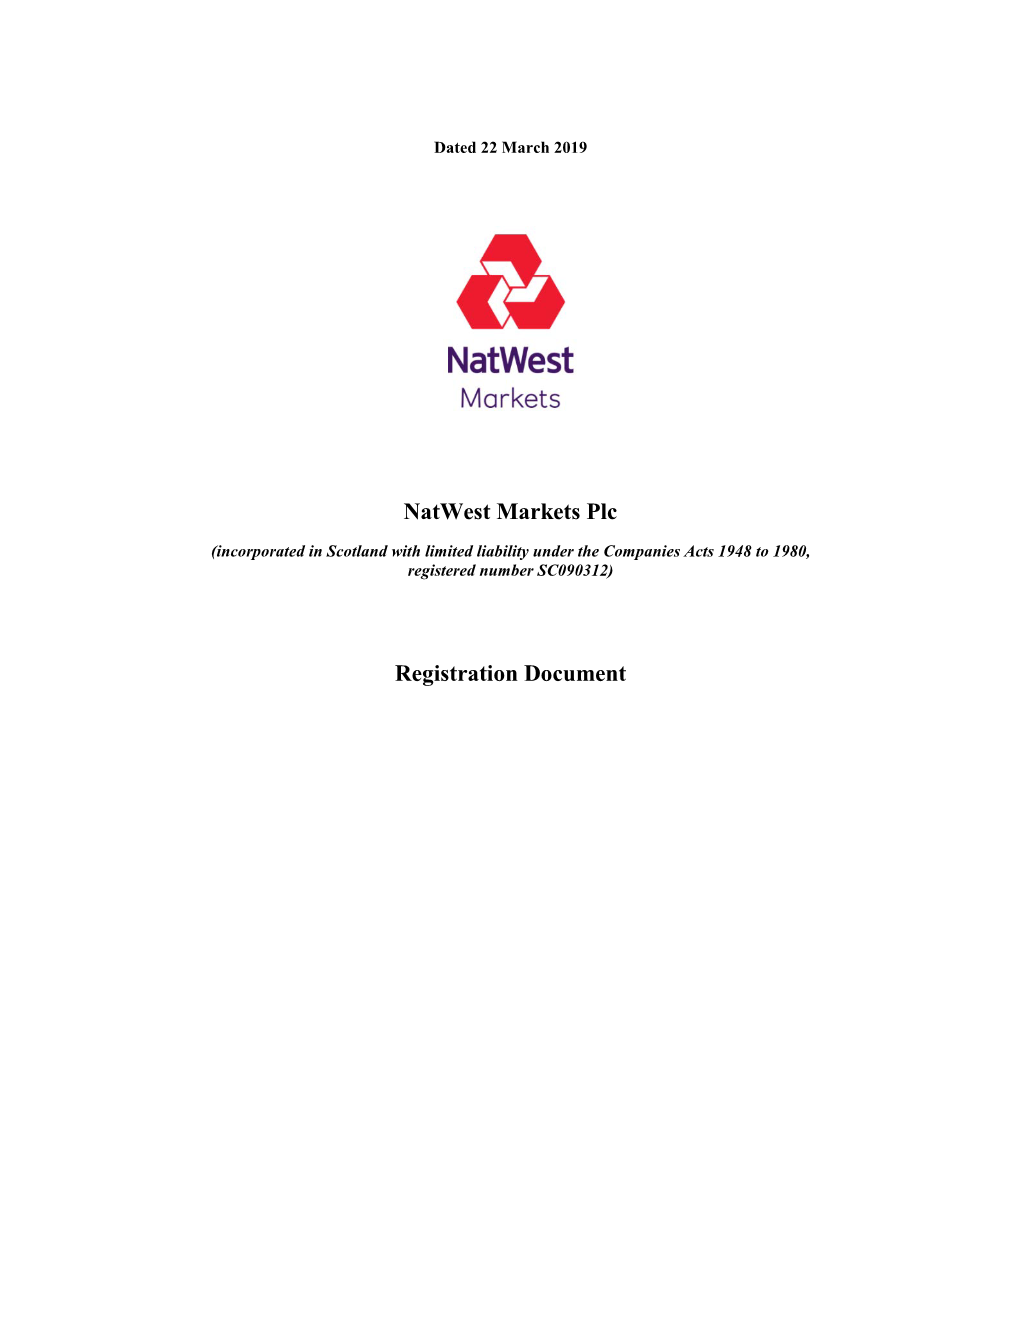 Natwest Markets Plc Registration Document